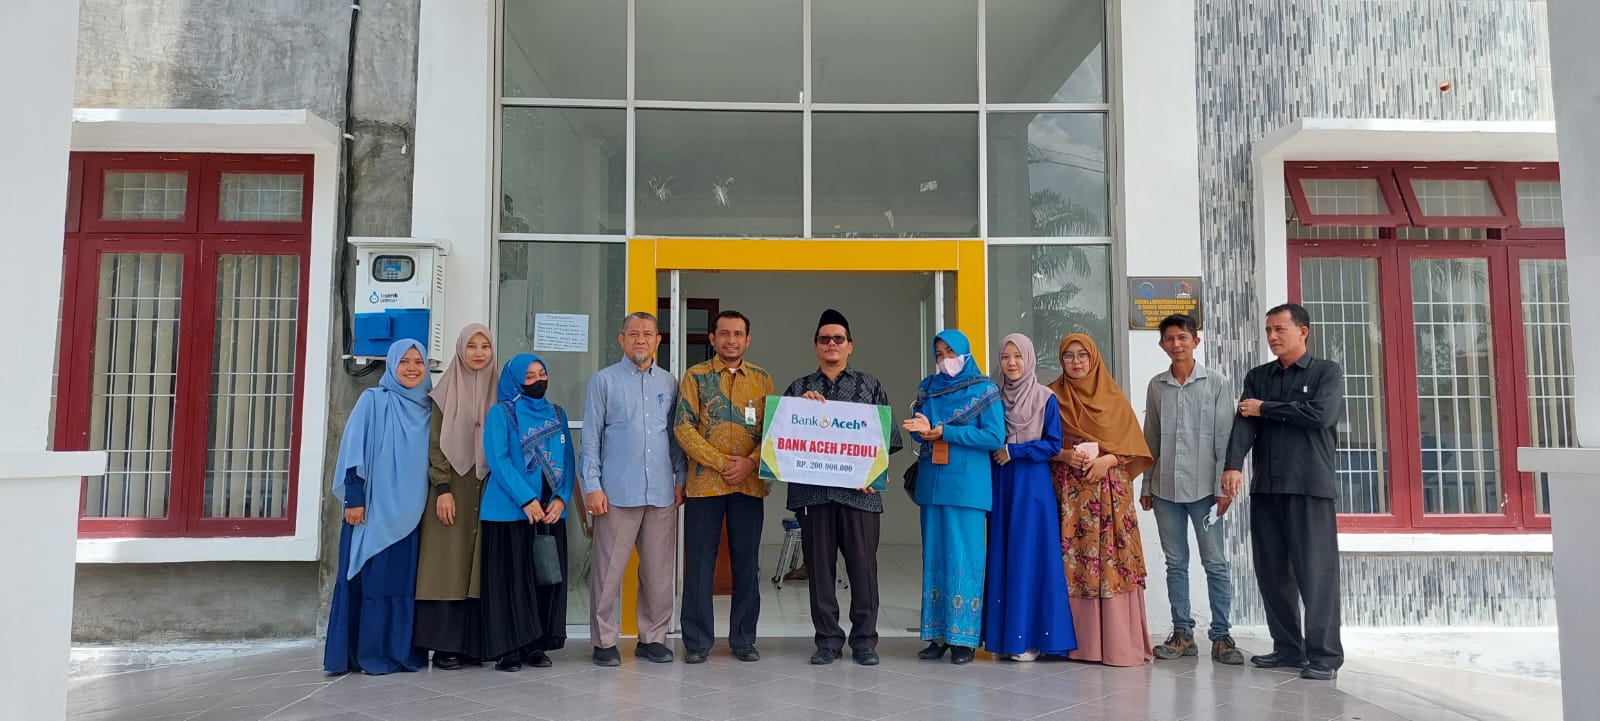 Dukung Pendidikan Bank Aceh Syariah Serahkan 200 Juta Untuk PBI Teuku Umar